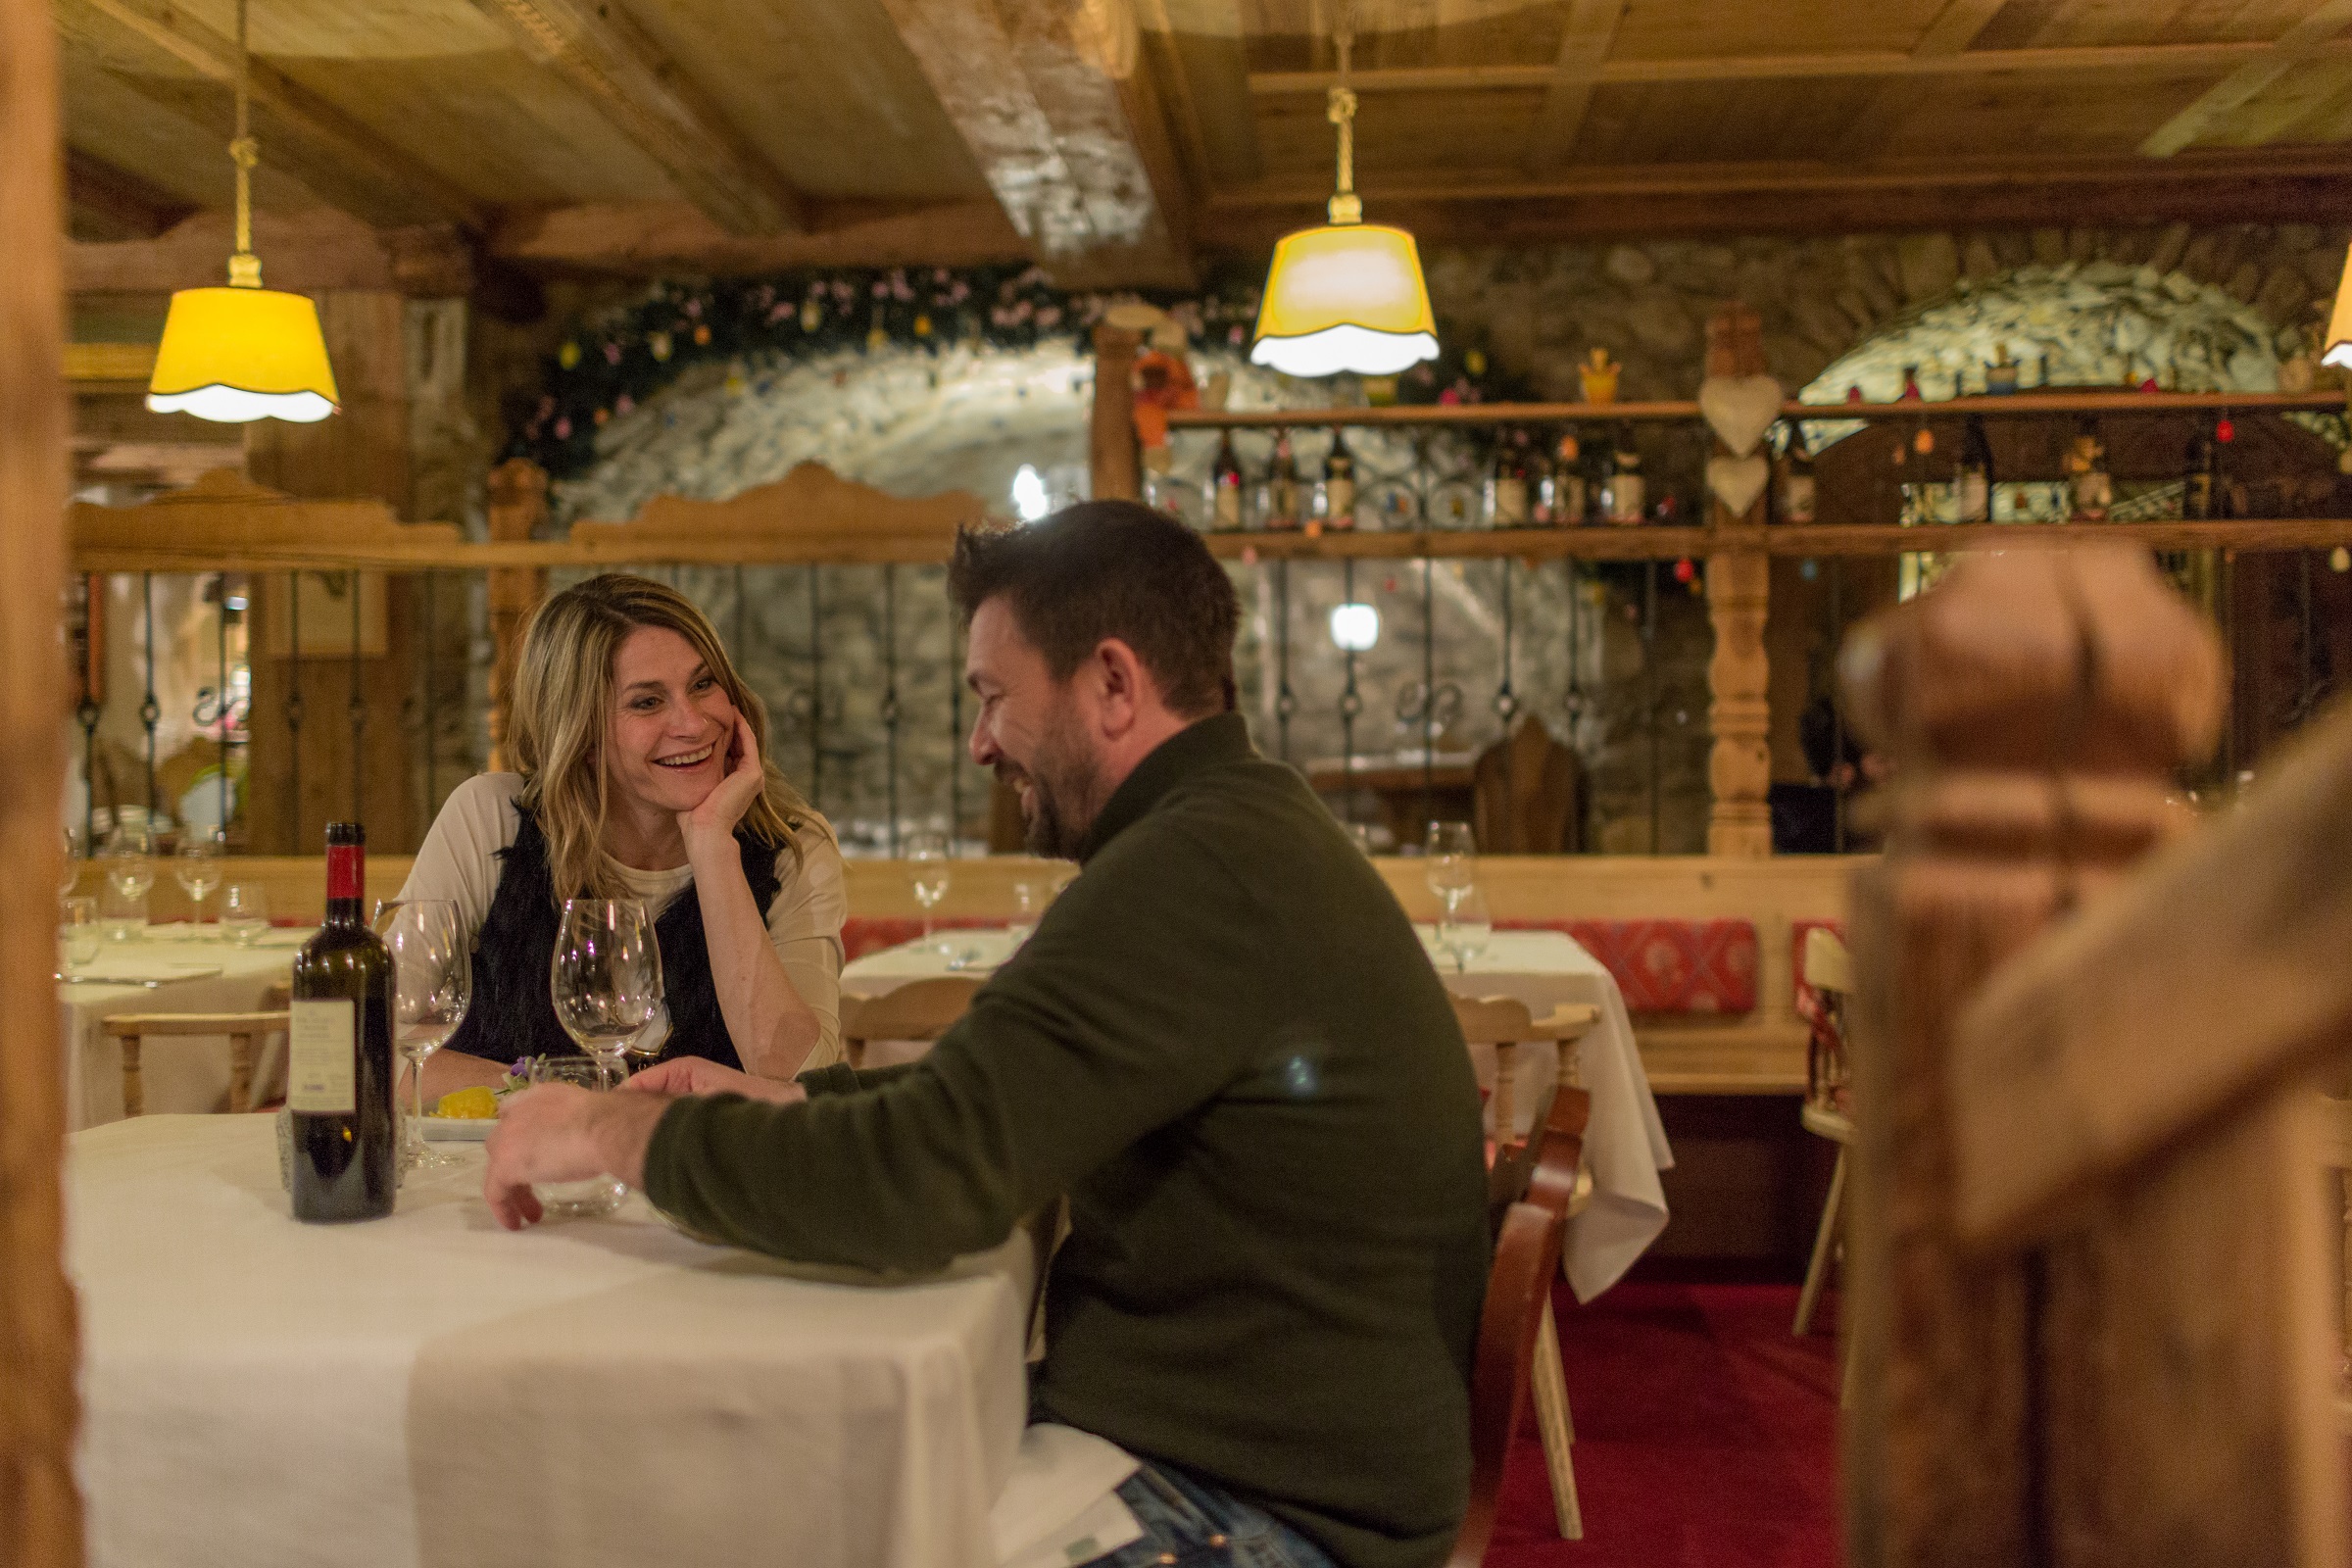 Cena di coppia, provincia di Brescia